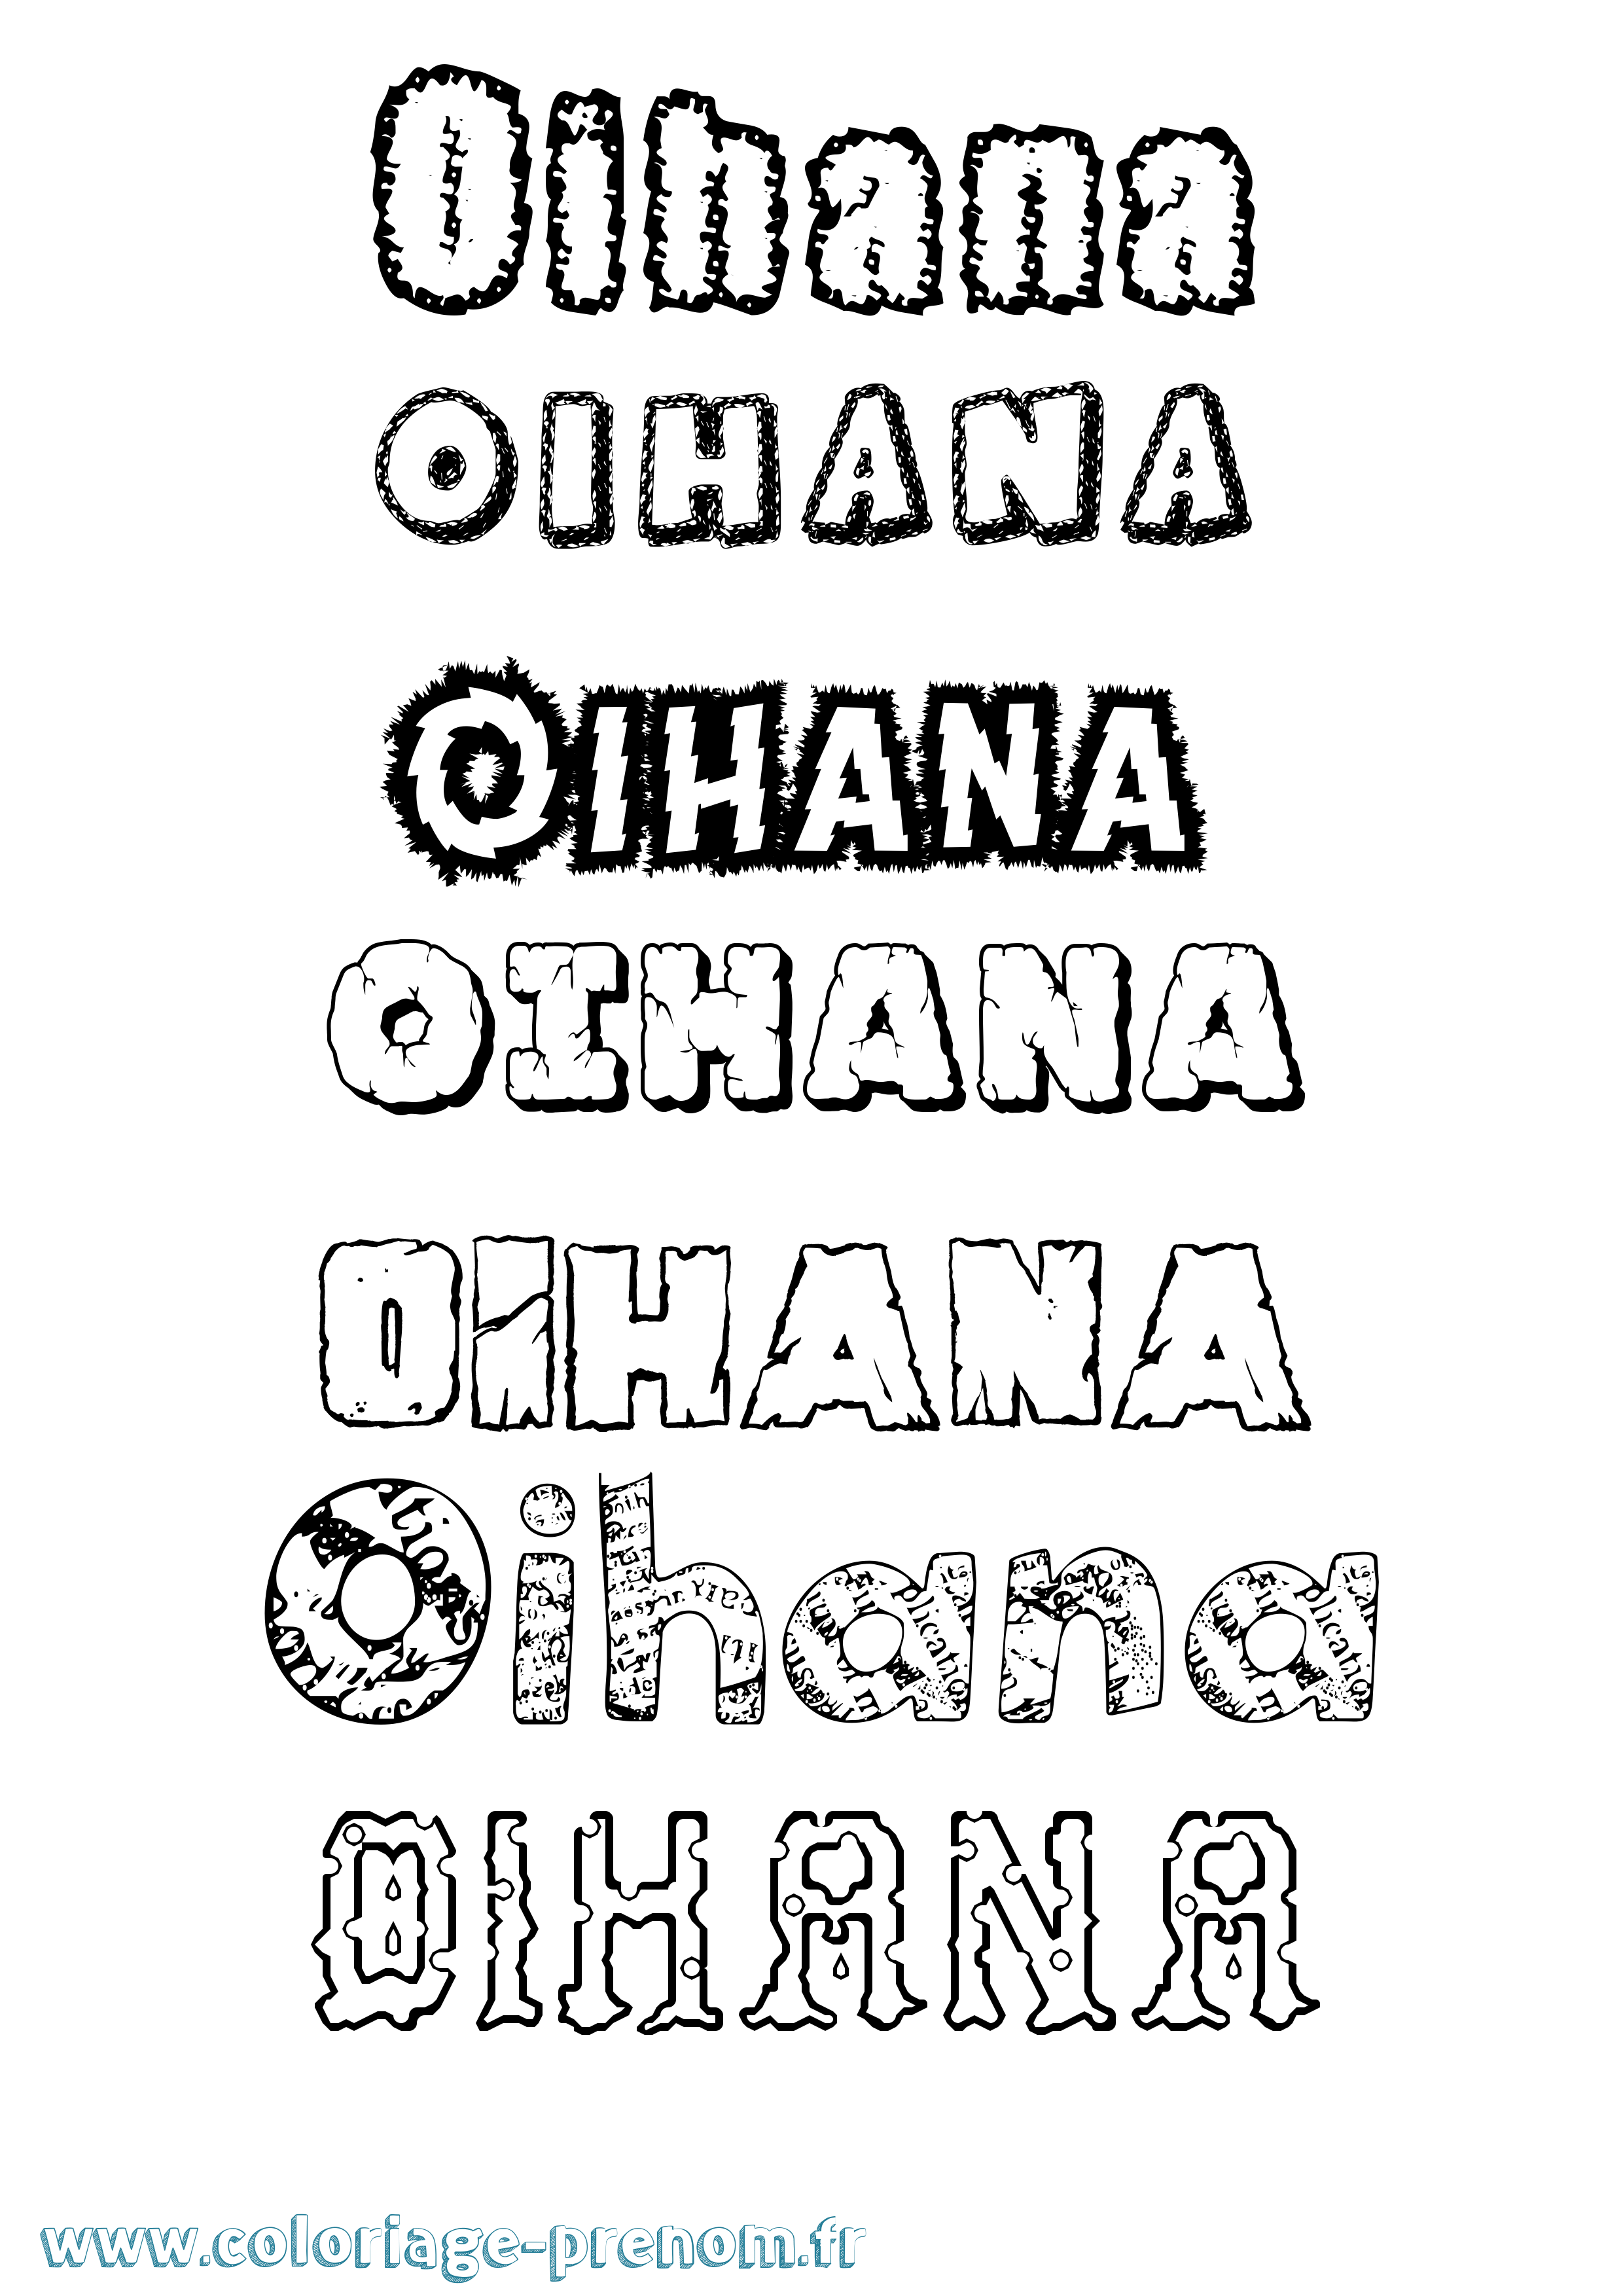 Coloriage prénom Oihana Destructuré